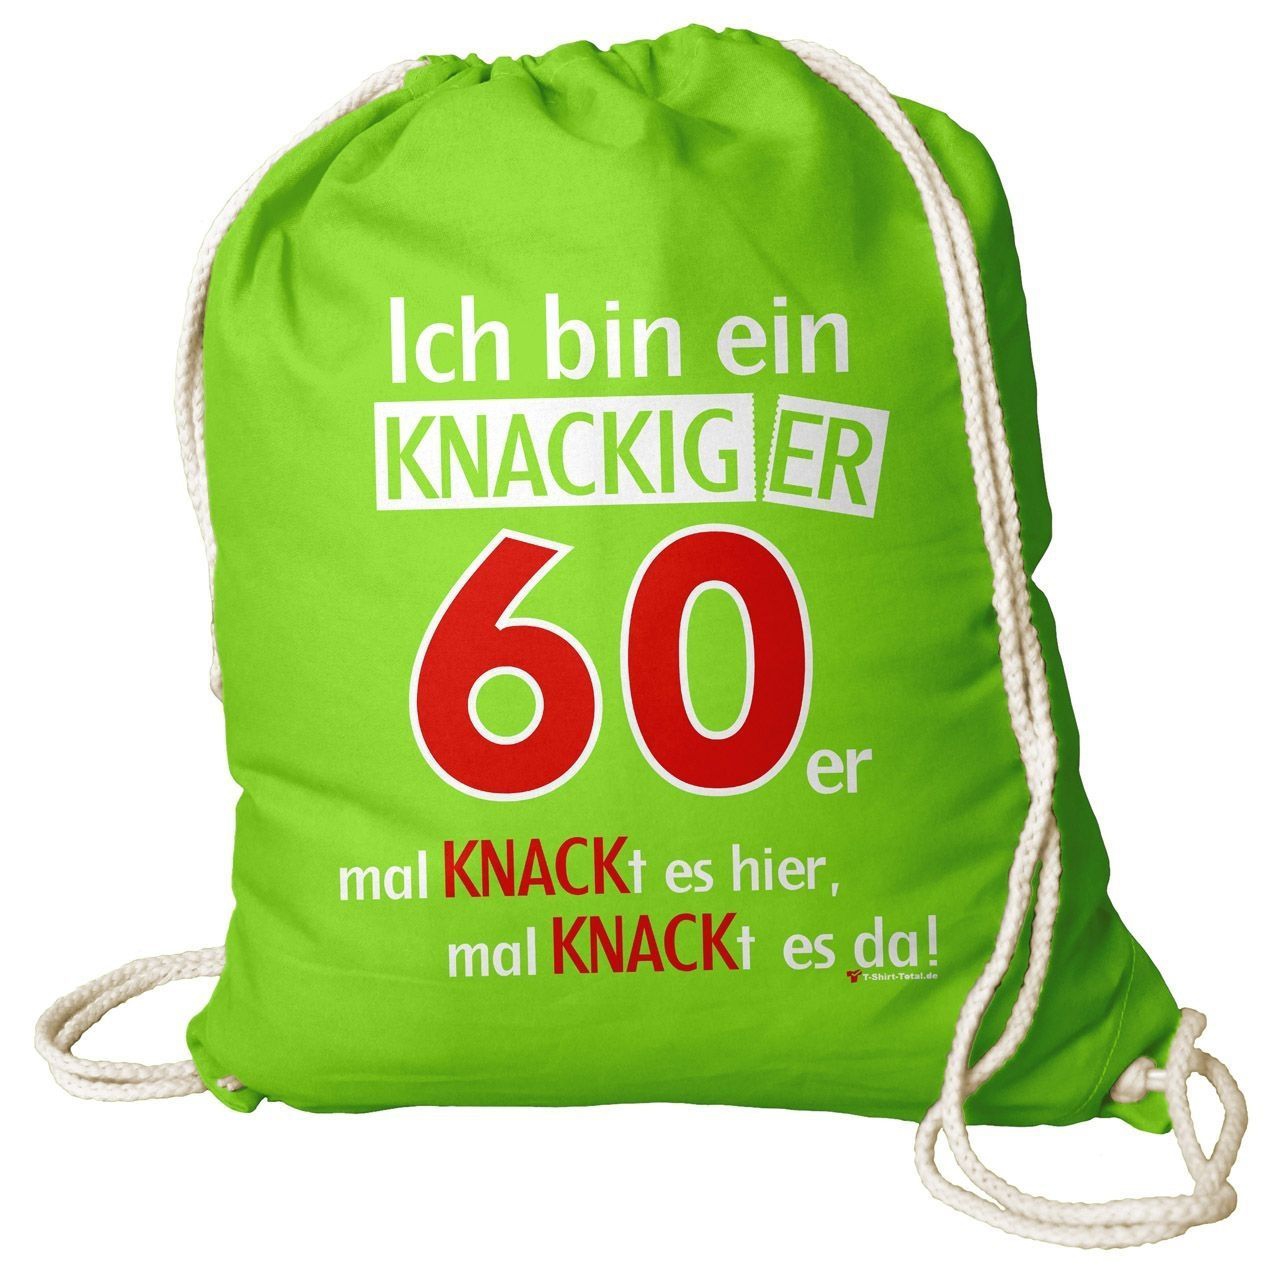 Knackiger 60er Rucksack Beutel hellgrün